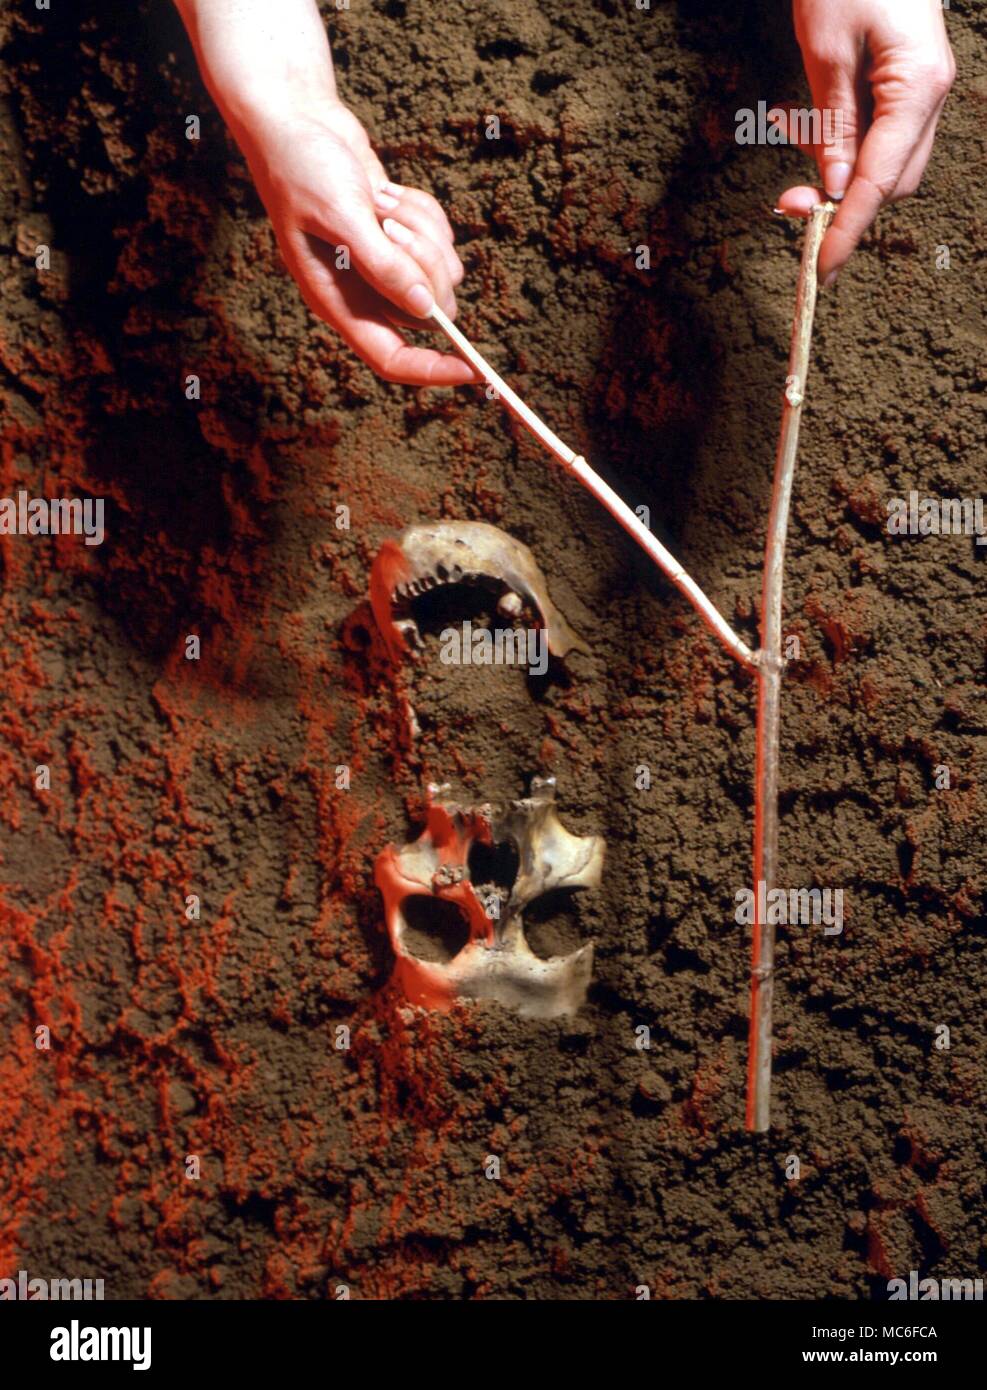 DOWSING dowsing arqueológica, en torno a un cráneo humano en la arena. Dowsing es una técnica útil para determinar la naturaleza de cualquier sub-enterrar en tales casos, antes de la extracción de restos Foto de stock